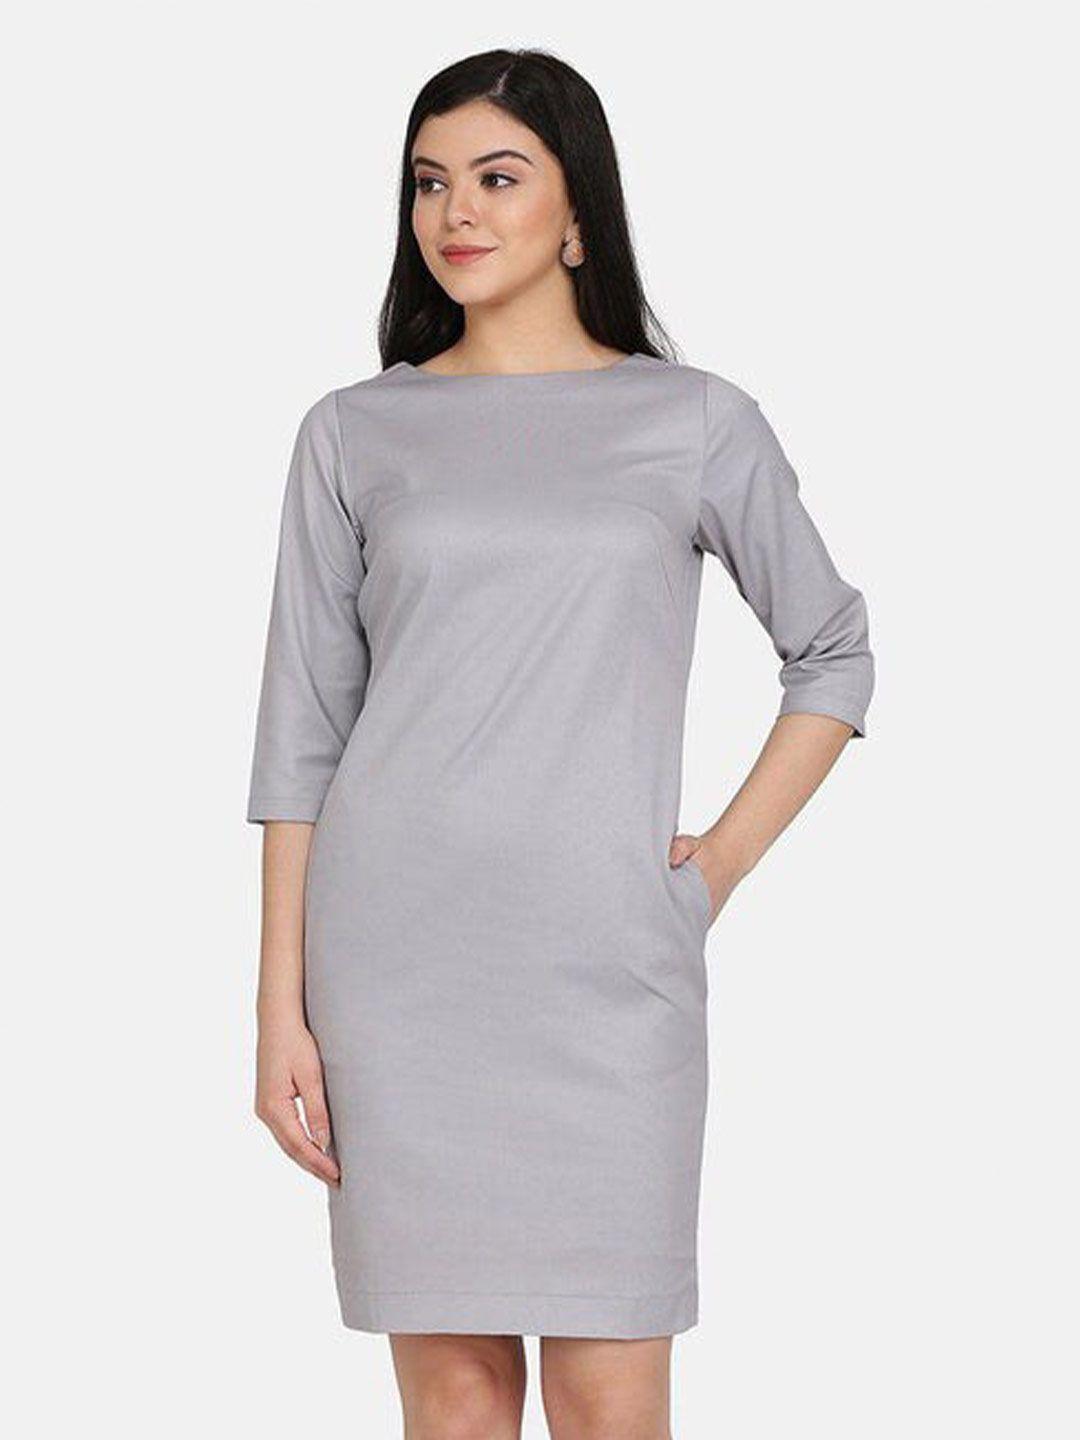 powersutra grey solid formal sheath dress